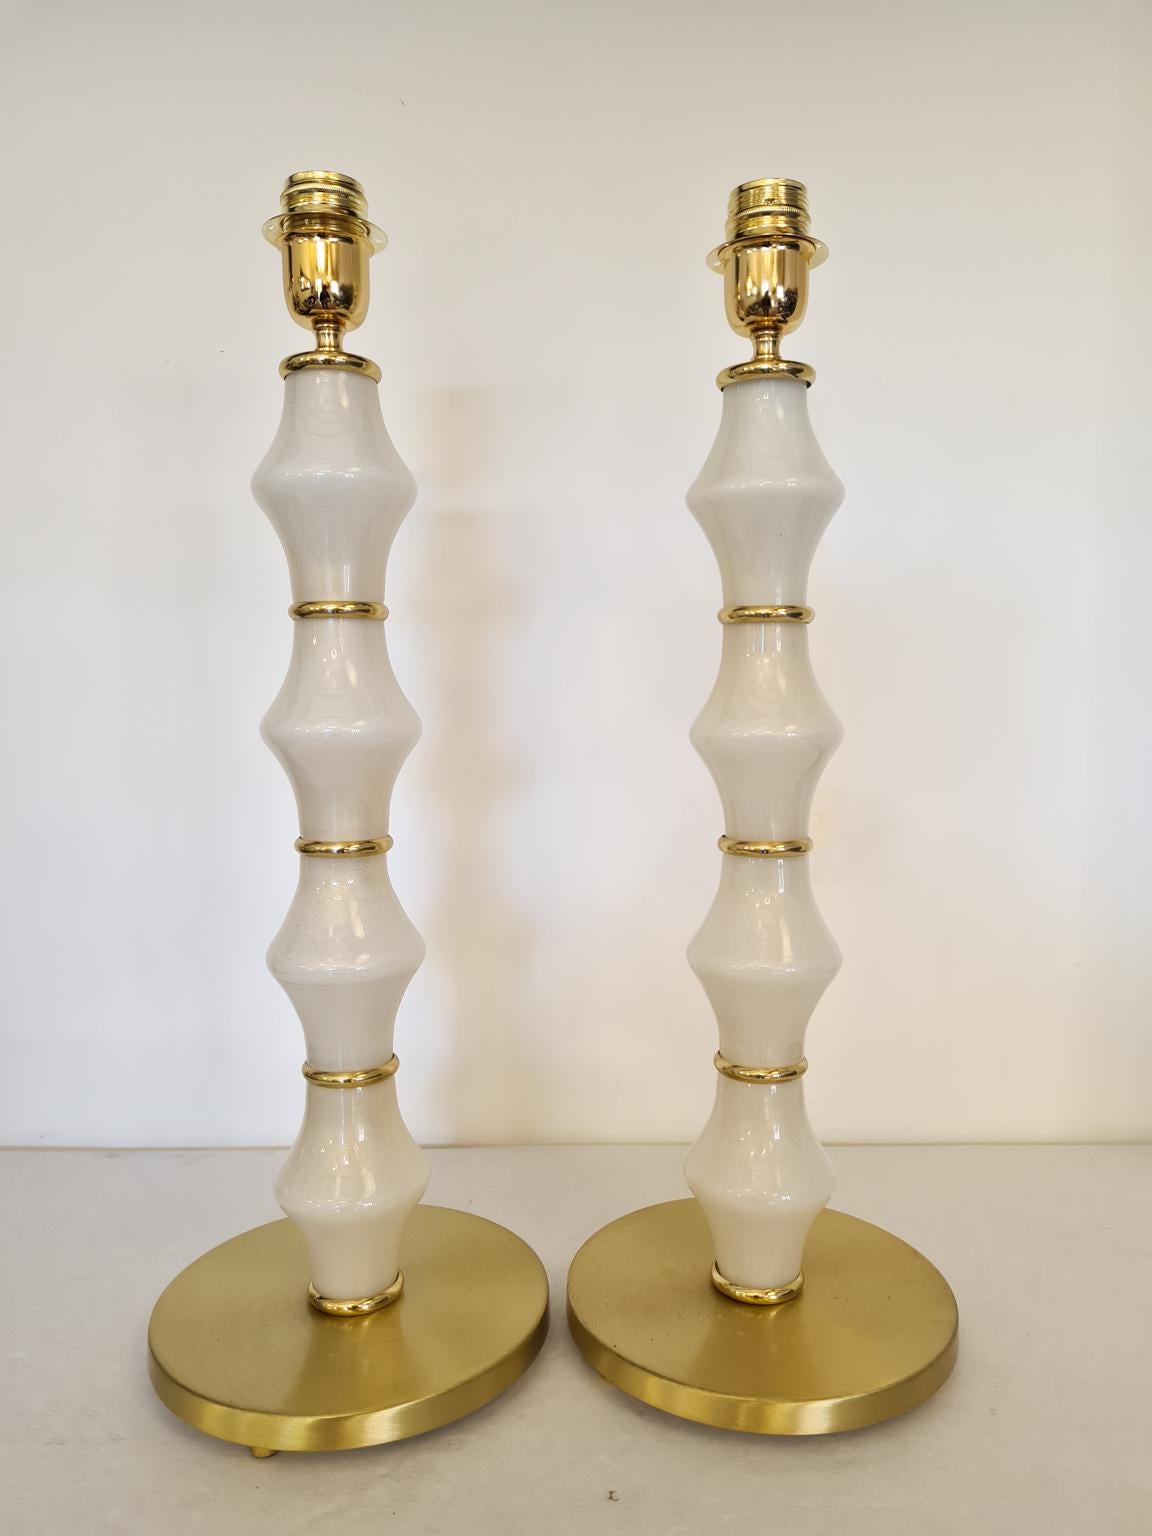 Paire exclusive de lampes de table en verre de Murano, couleur or blanc et anneaux chromés or.
Lampe fabriquée avec beaucoup de soin et de précision par notre maître verrier Alberto Donà de Murano.
Les produits sont entièrement fabriqués à la main